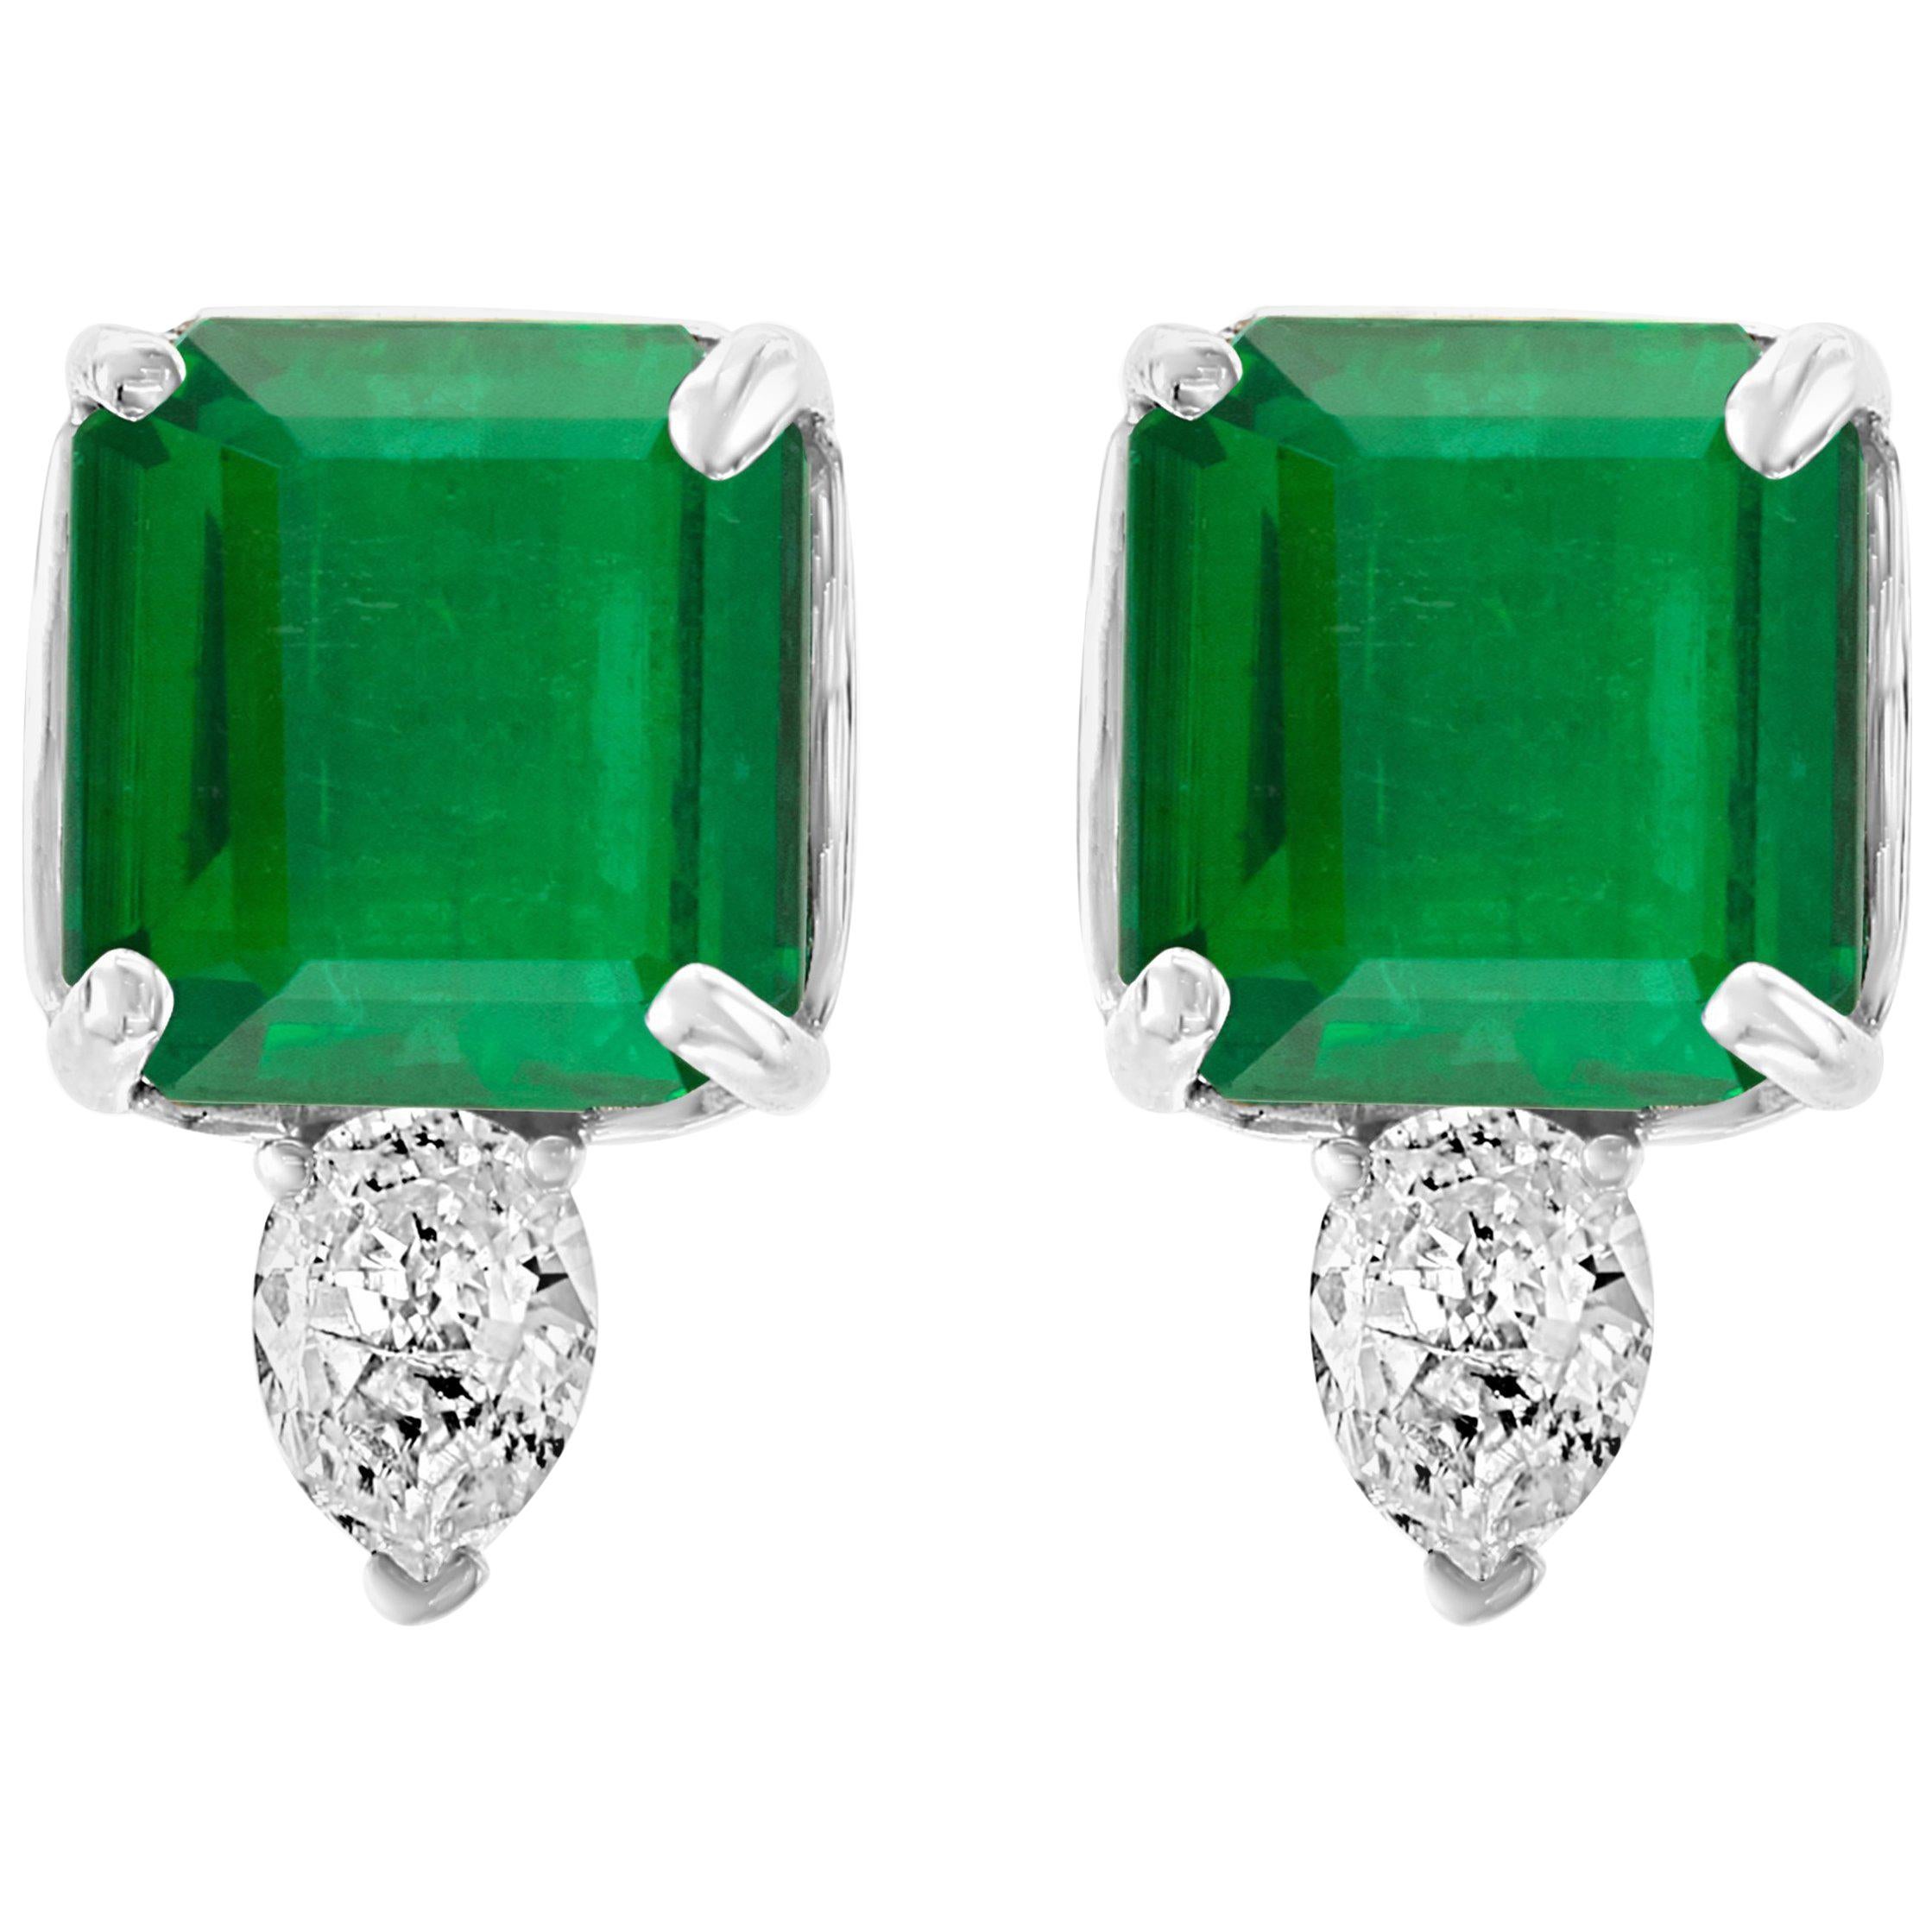 8 Carat Emerald Cut Emerald Diamond Stud Earrings 18 Karat Gold For Sale